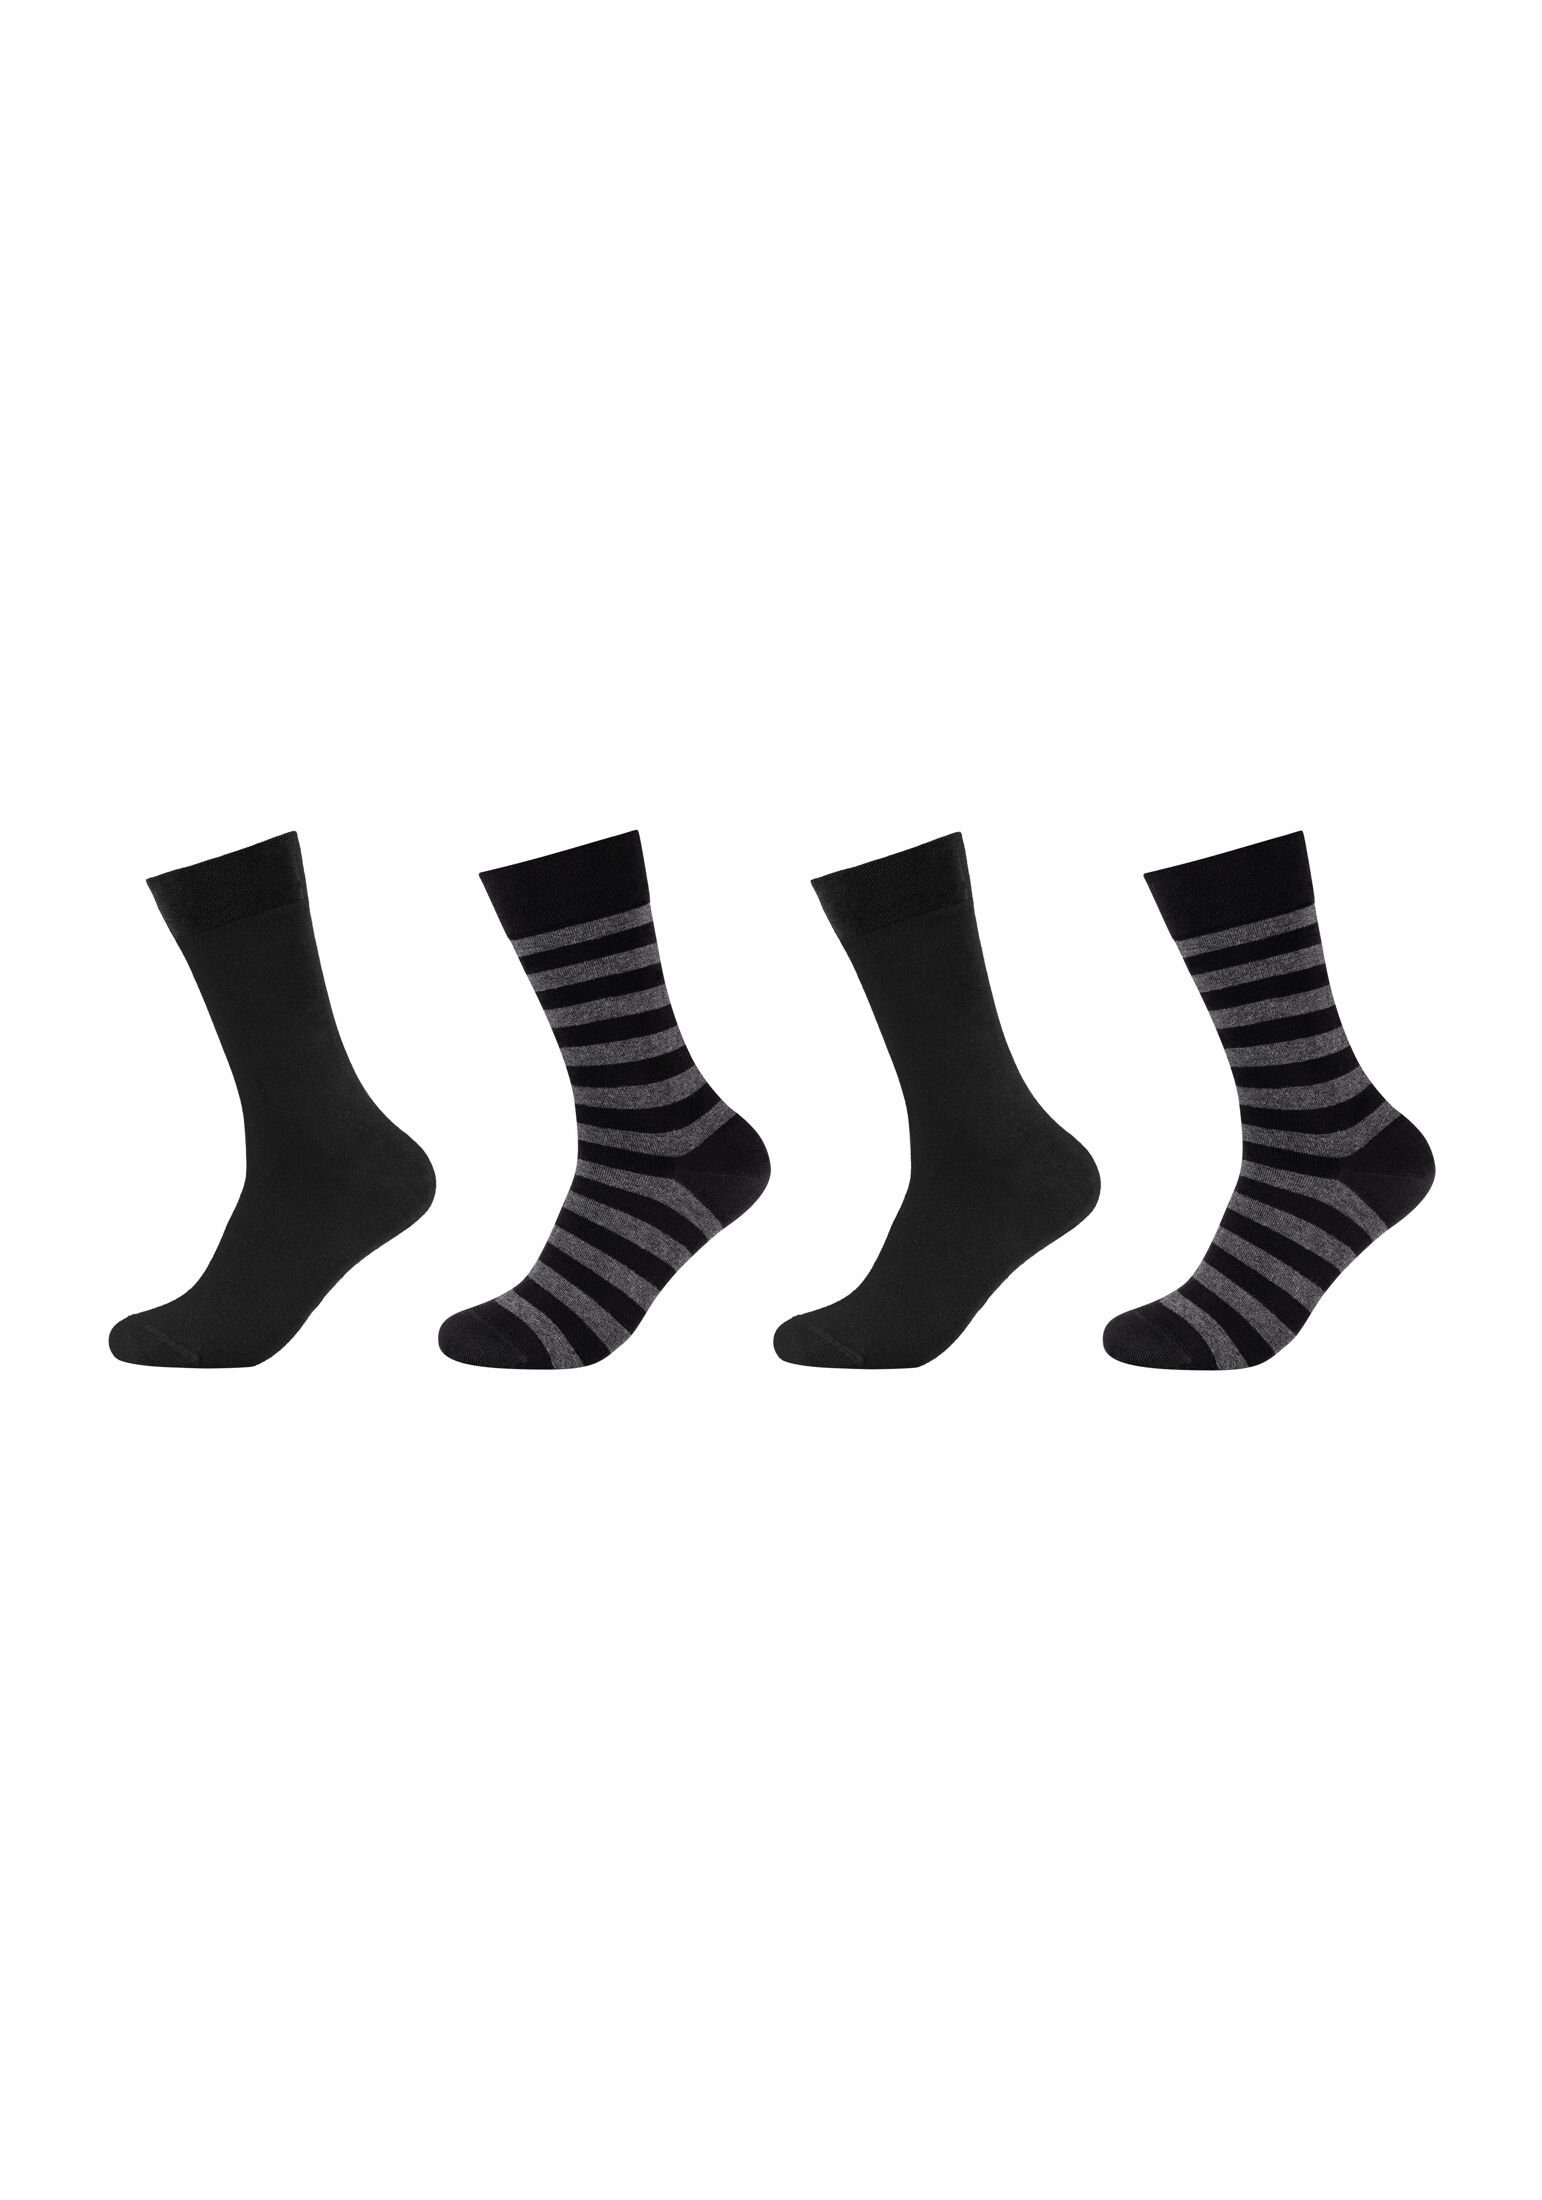 Camano Socken Socken 4er Pack black